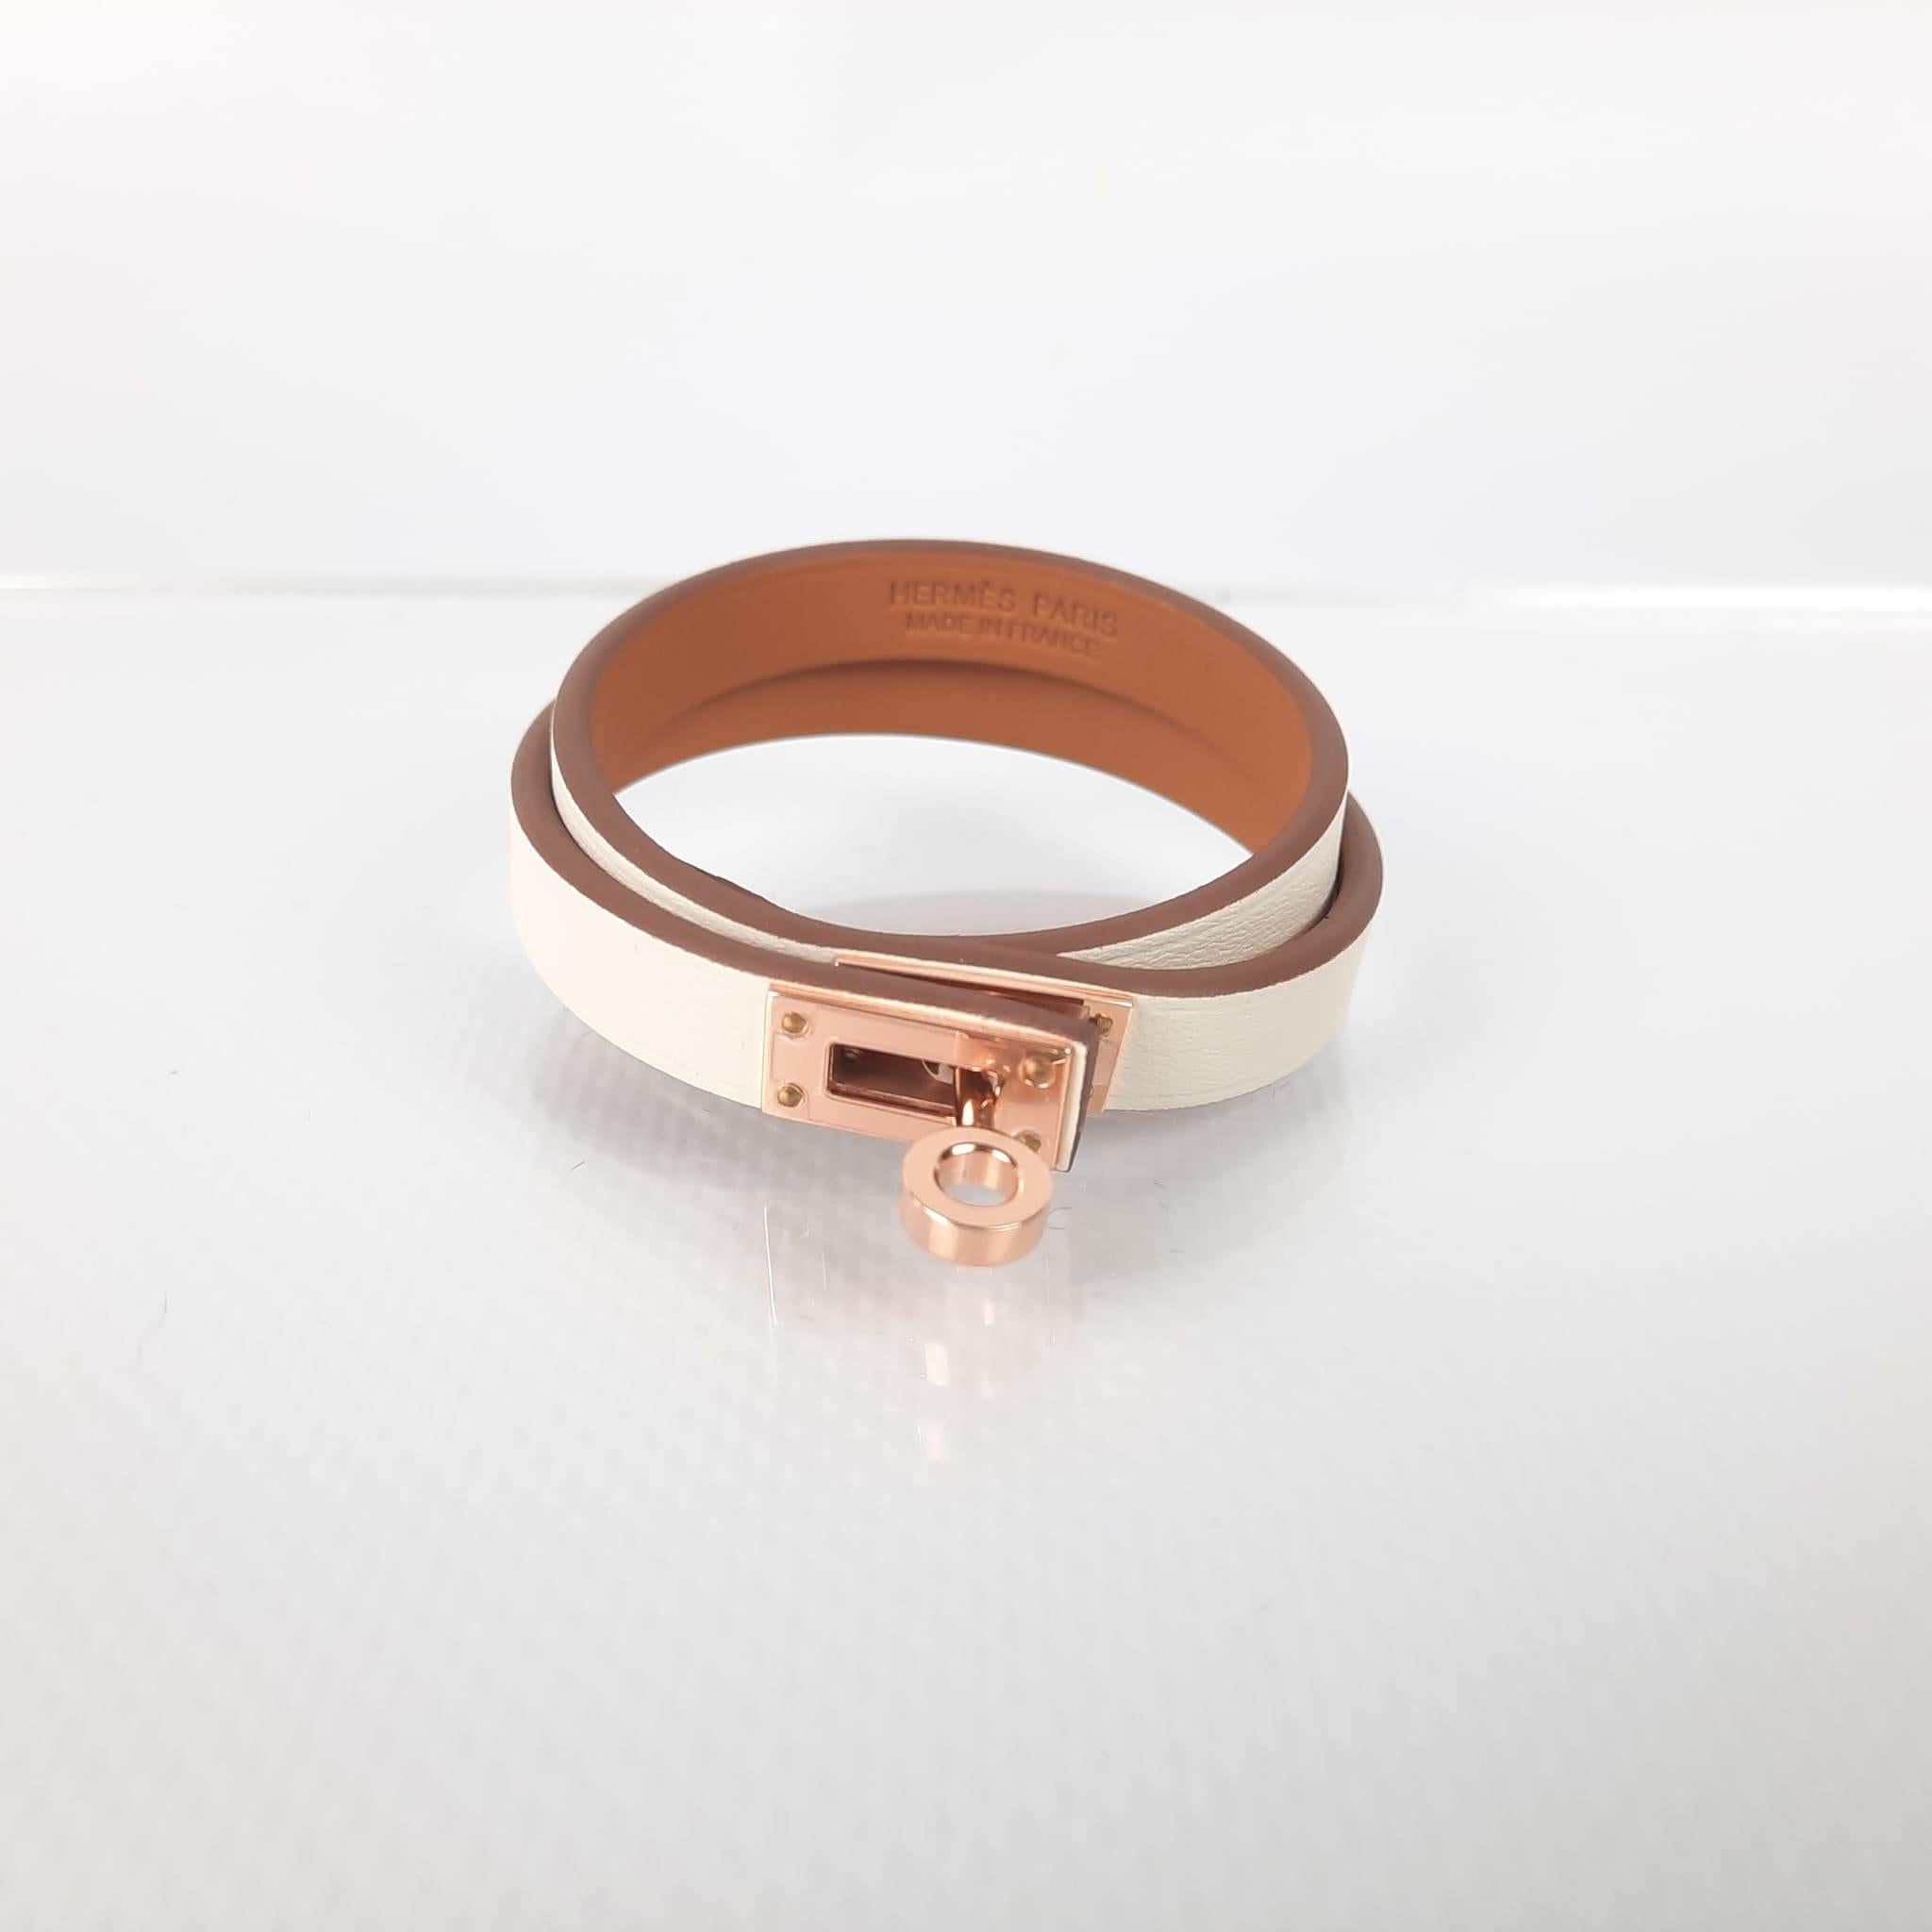 Hermes Nata & rose gold hardware Mini Kelly Double Tour bracelet size T2 1